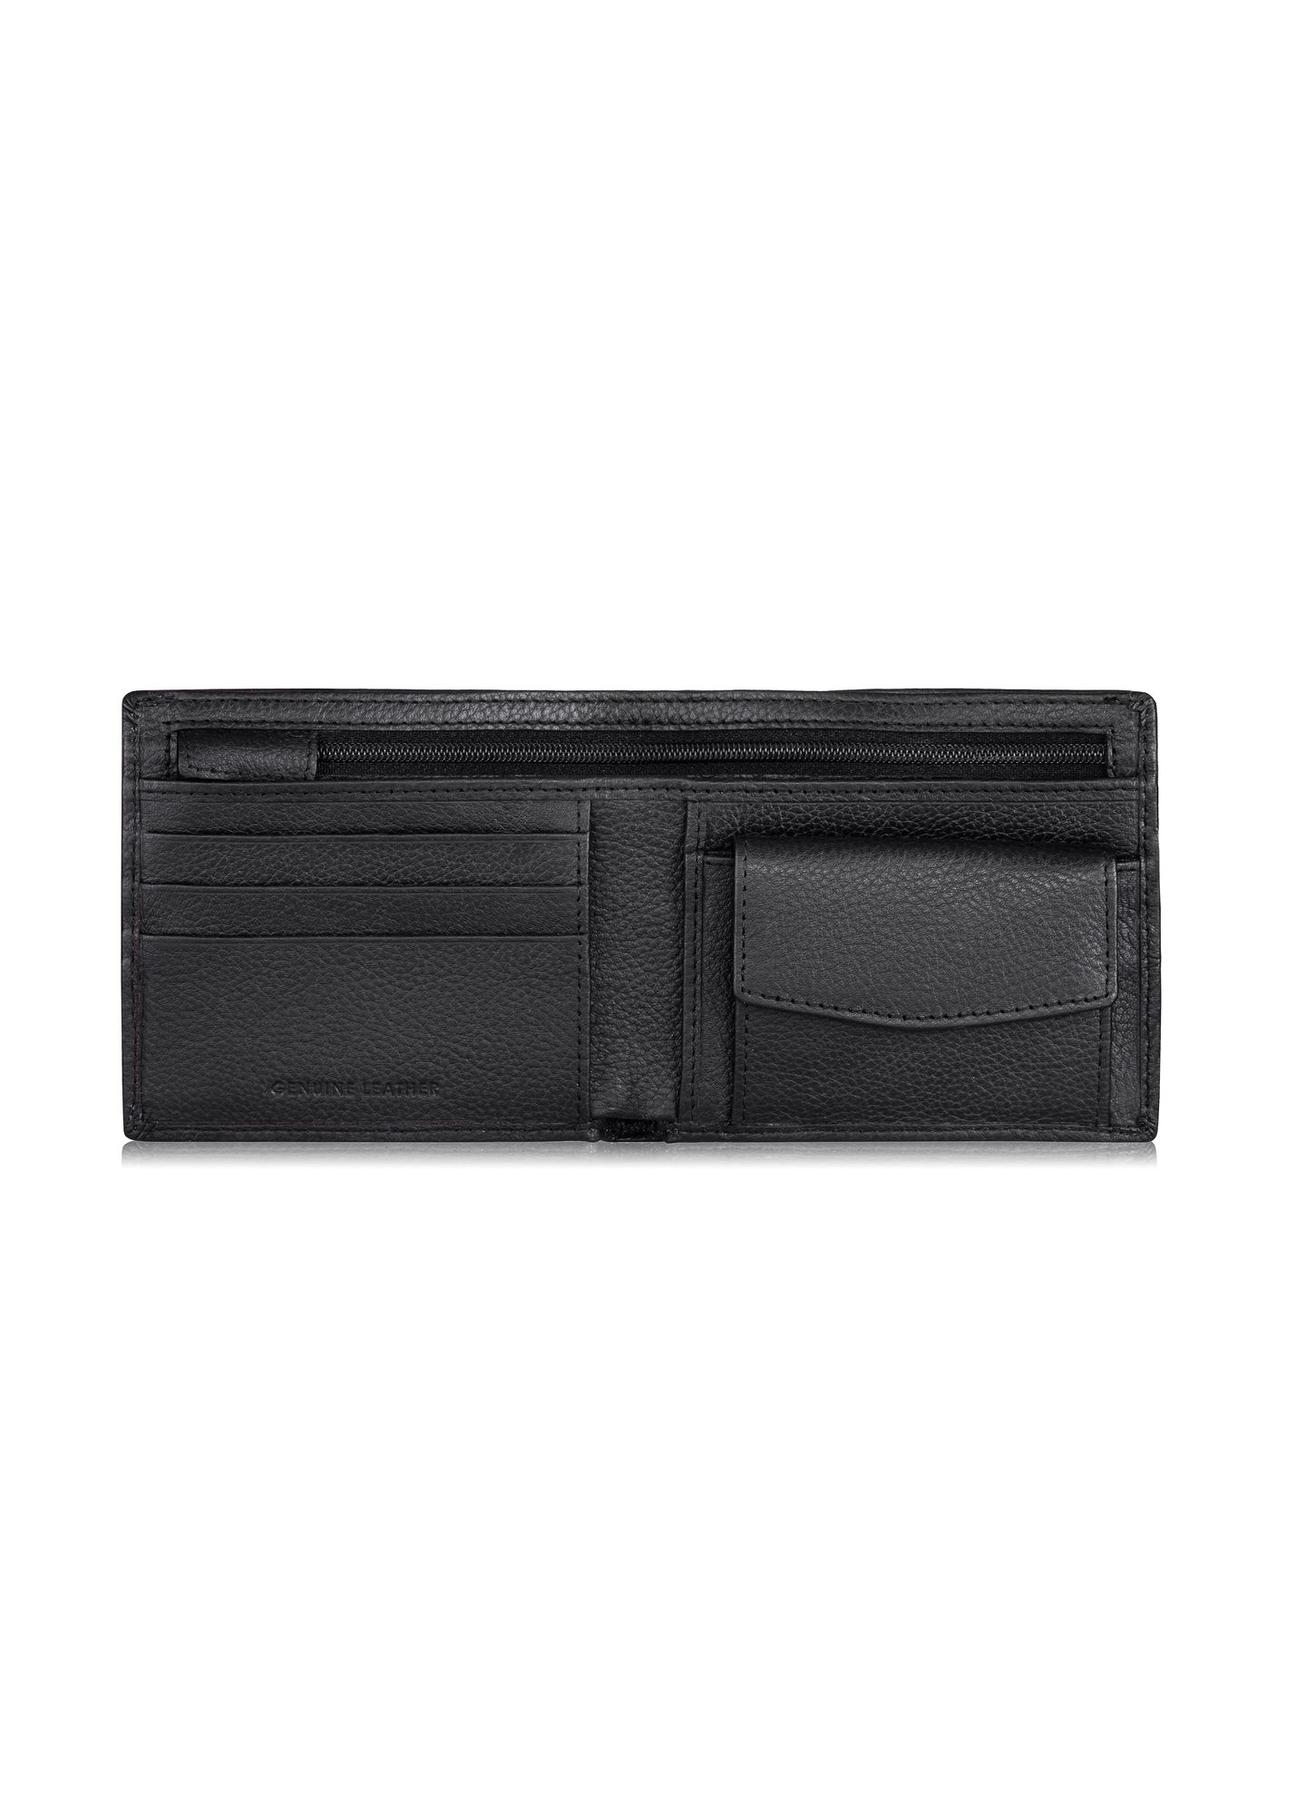 Skórzany portfel męski z przeszyciem PORMS-0522-99(W23)